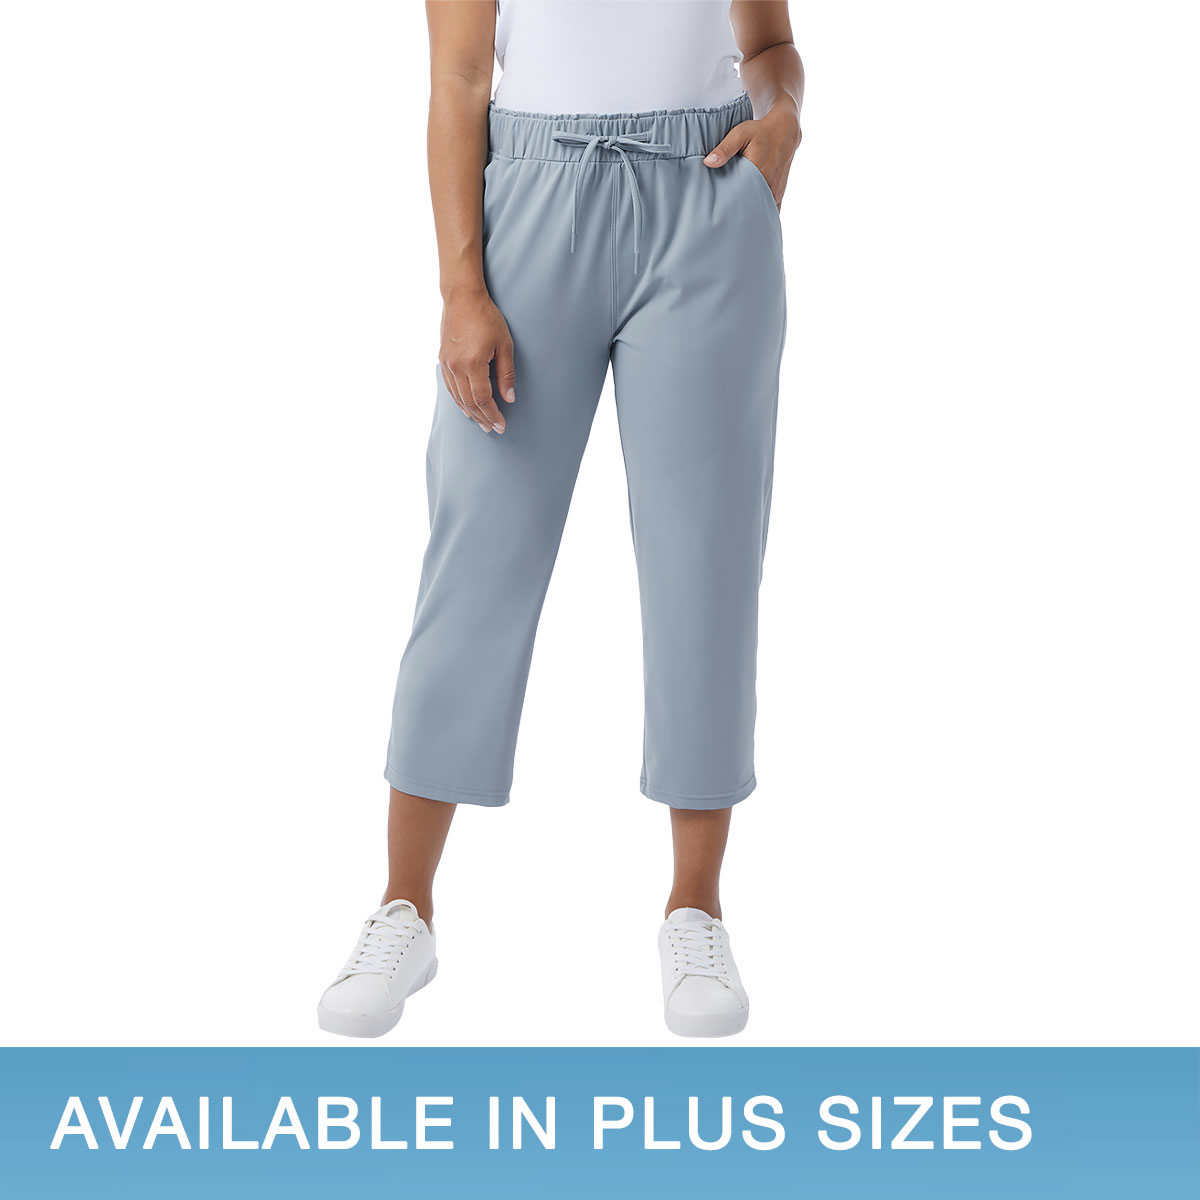 Fila Sport Capri Pants Size Large